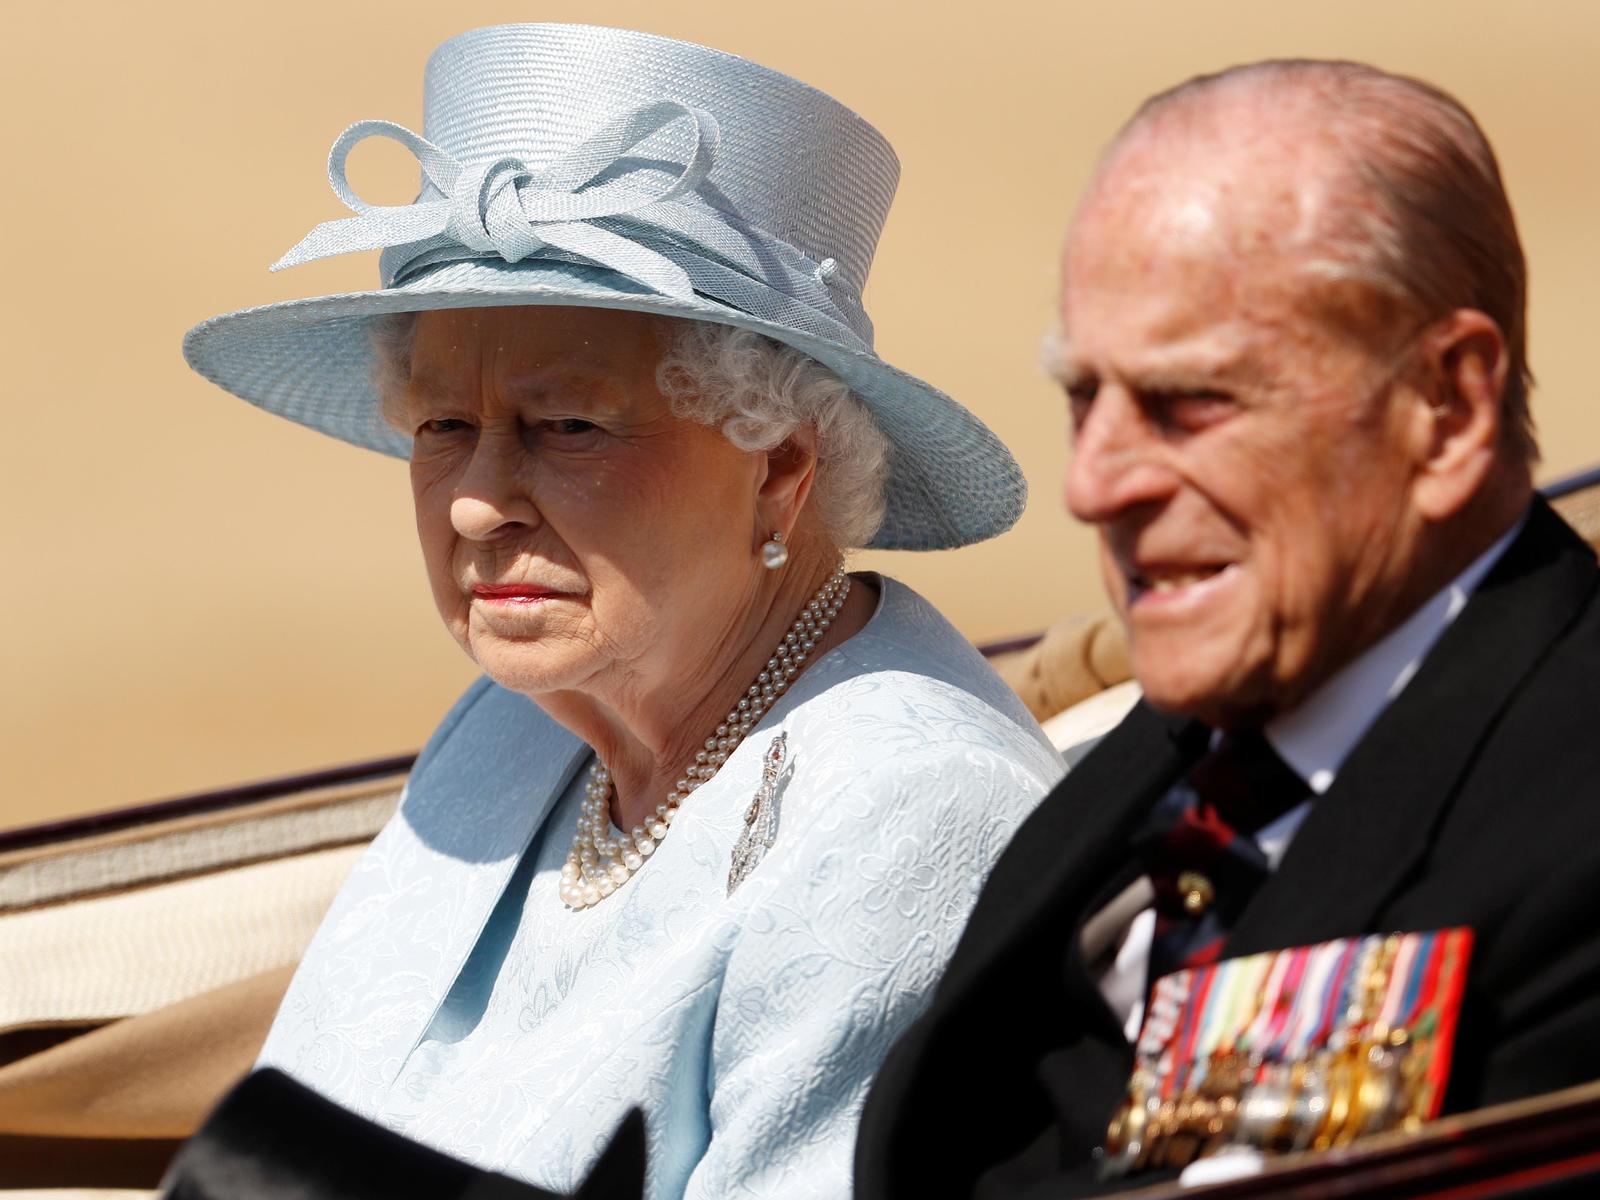 Também em tom azul, porém mais claro, foi a Rainha Isabel II vestida na celebração do seu aniversário no ano passado, 2017. [REUTERS/Peter Nicholls]